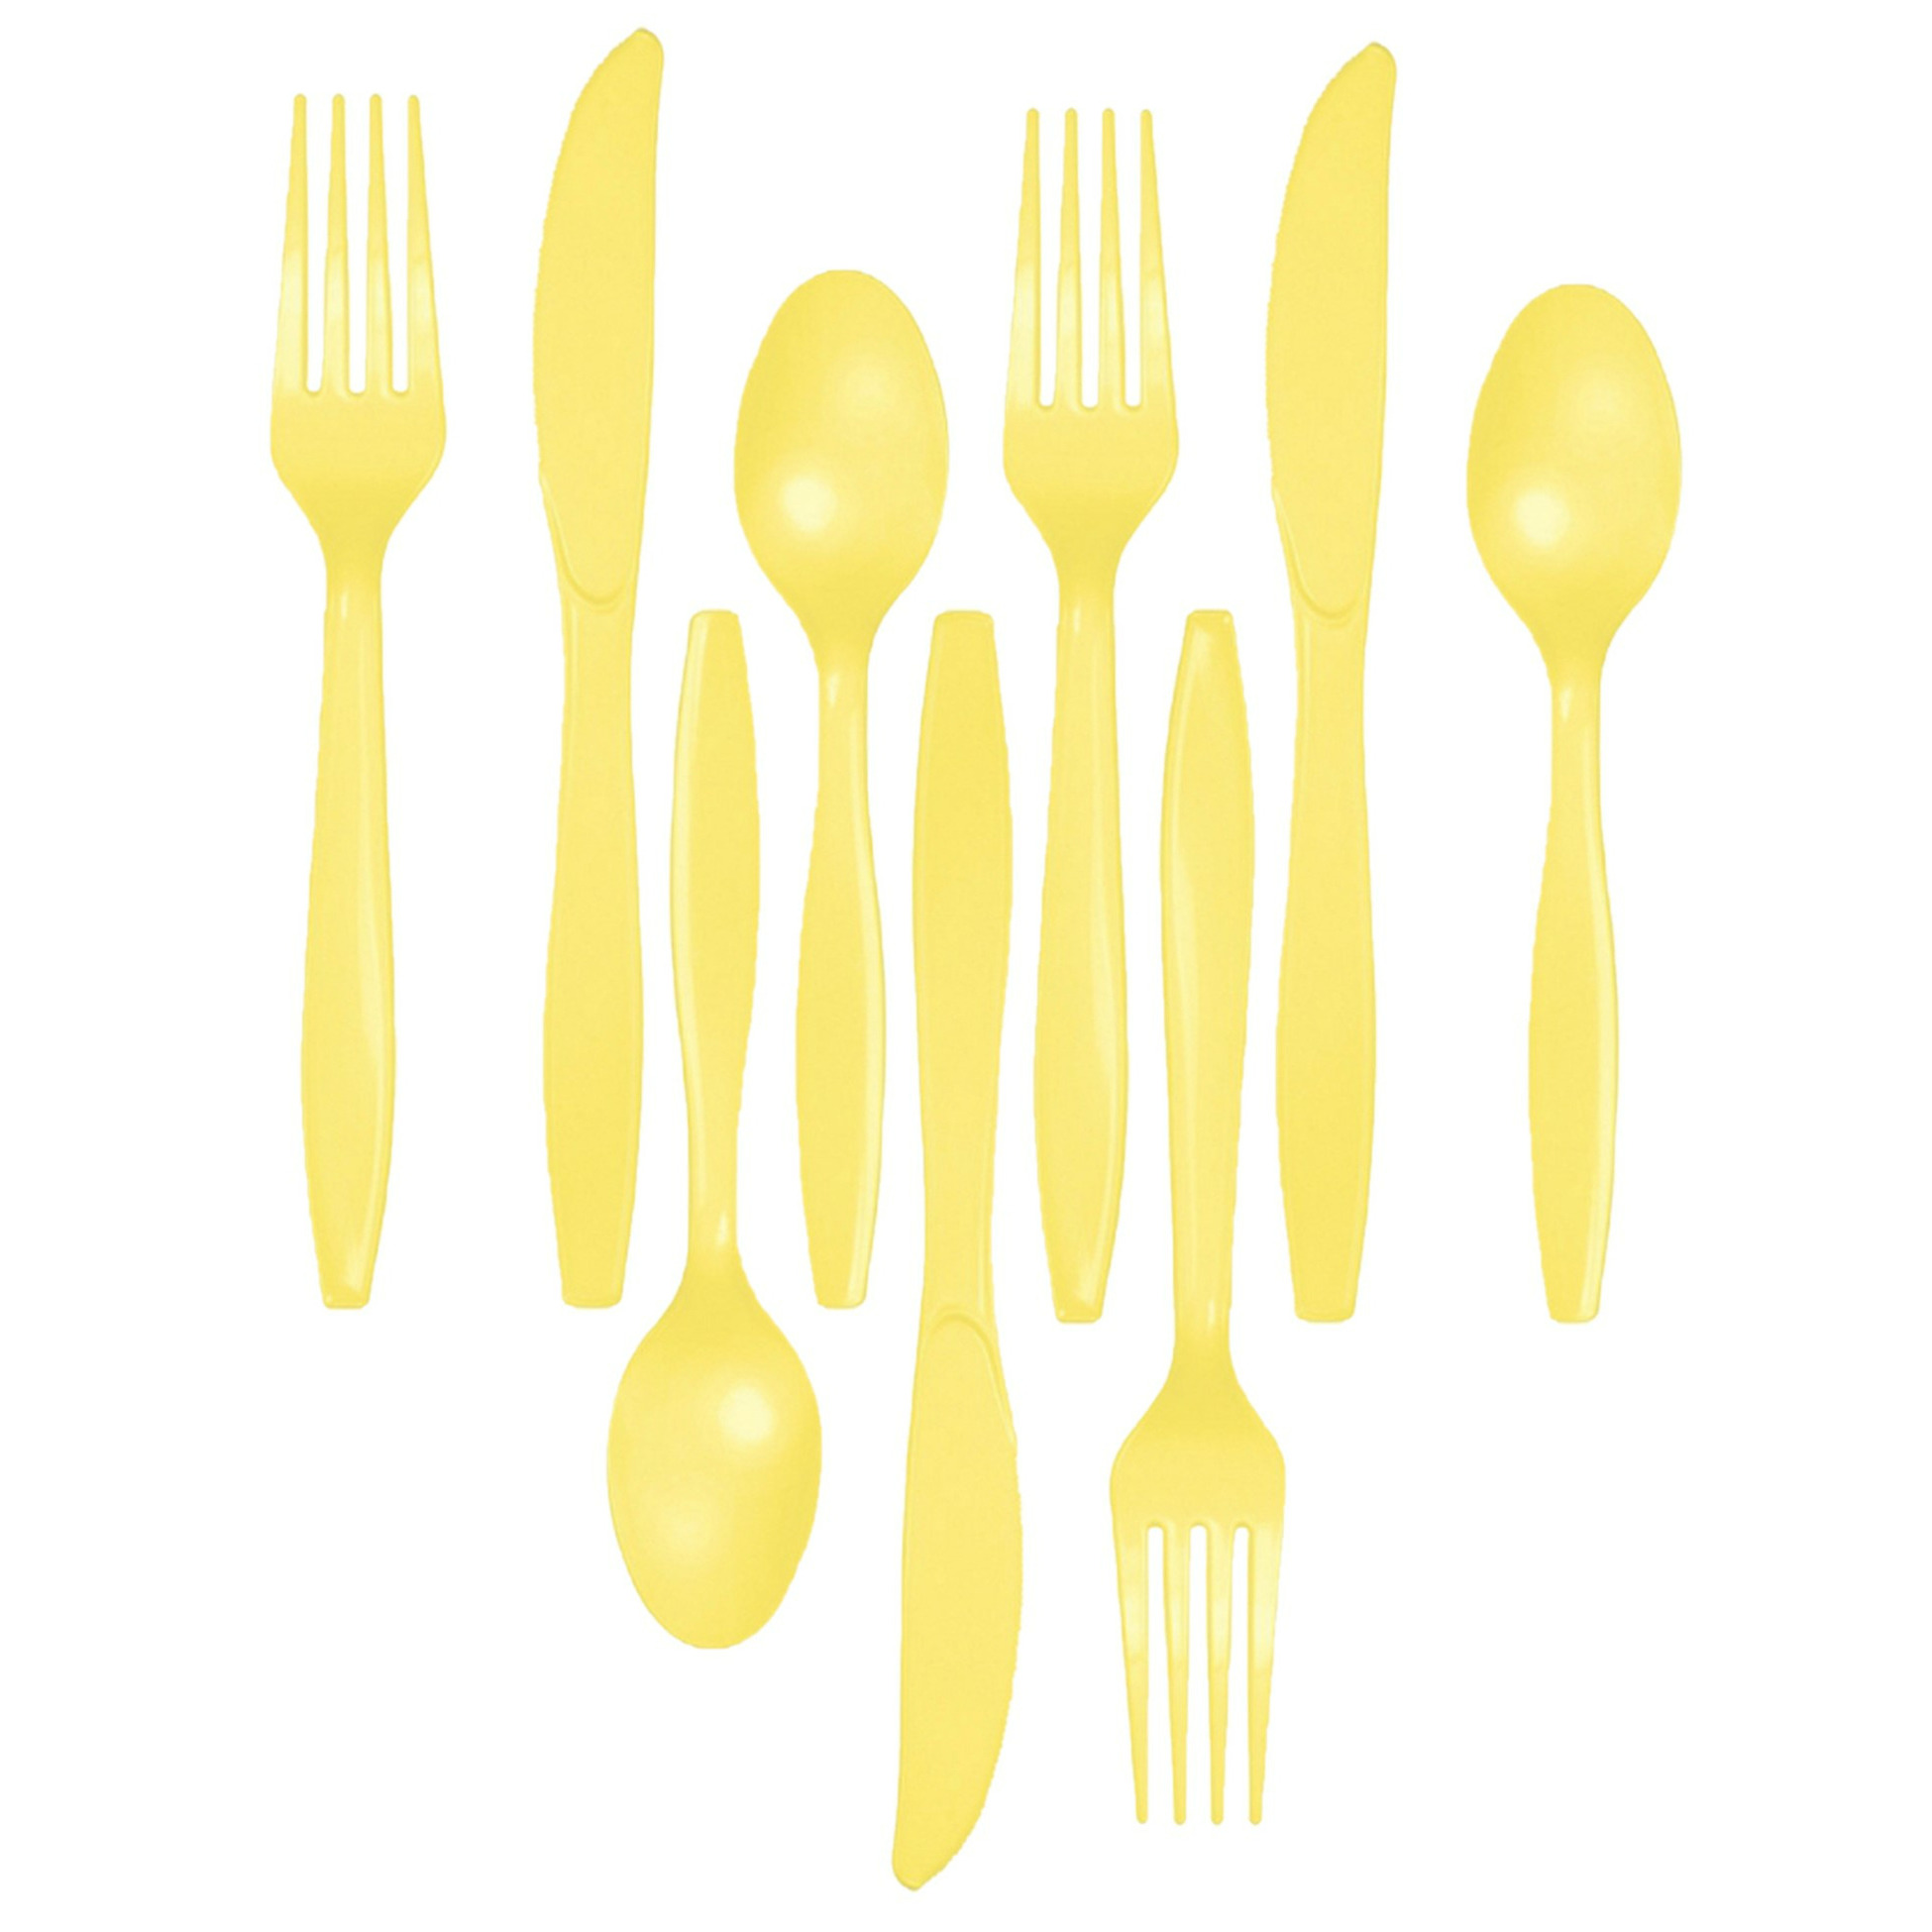 Kunststof bestek party-bbq setje 72x delig geel messen-vorken-lepels herbruikbaar